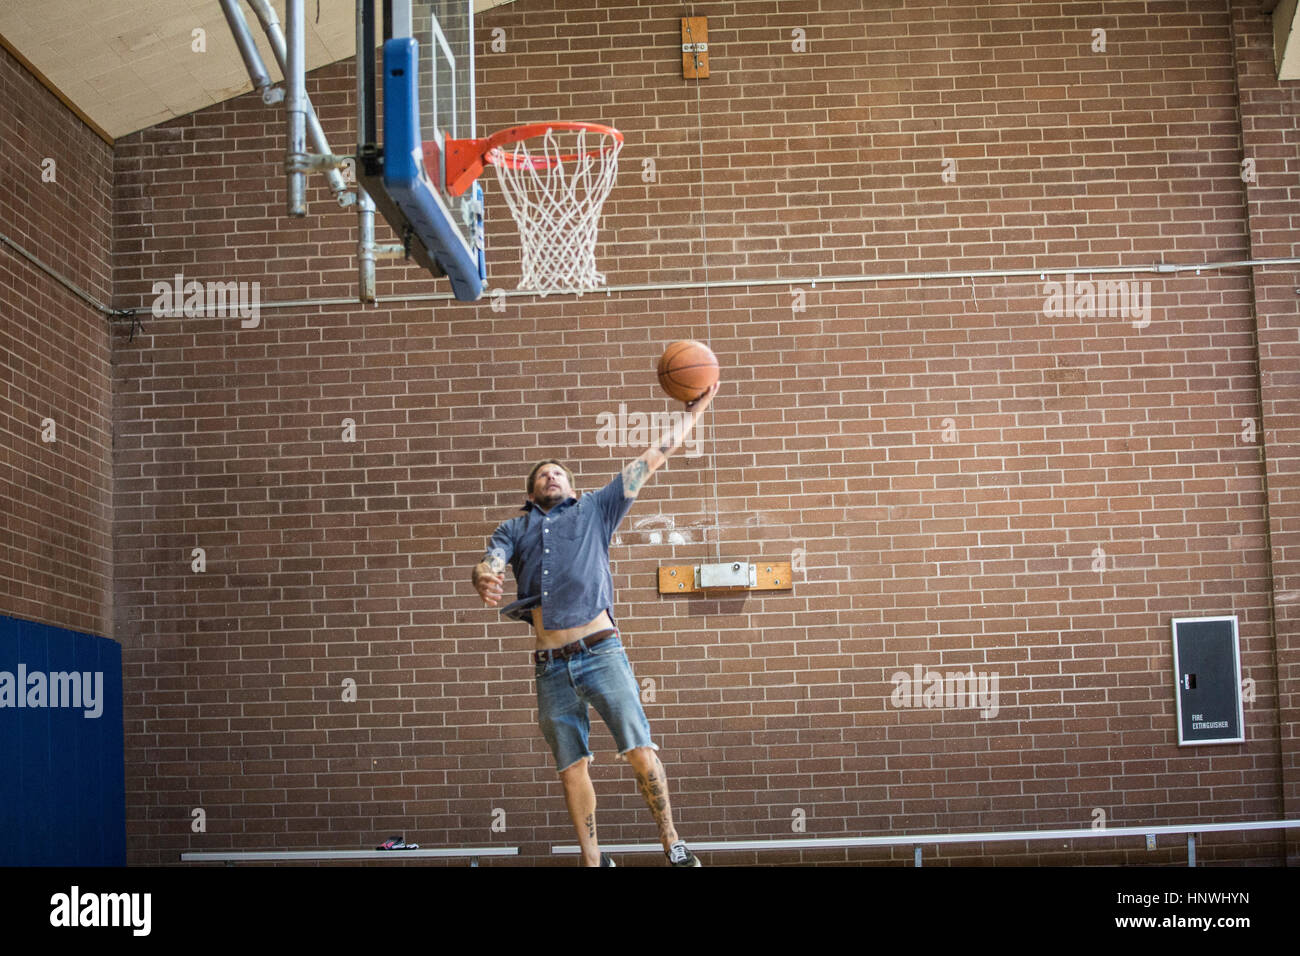 Tätowierte Mann springen und mit dem Ziel Ball in Richtung Basketballkorb auf Platz Stockfoto